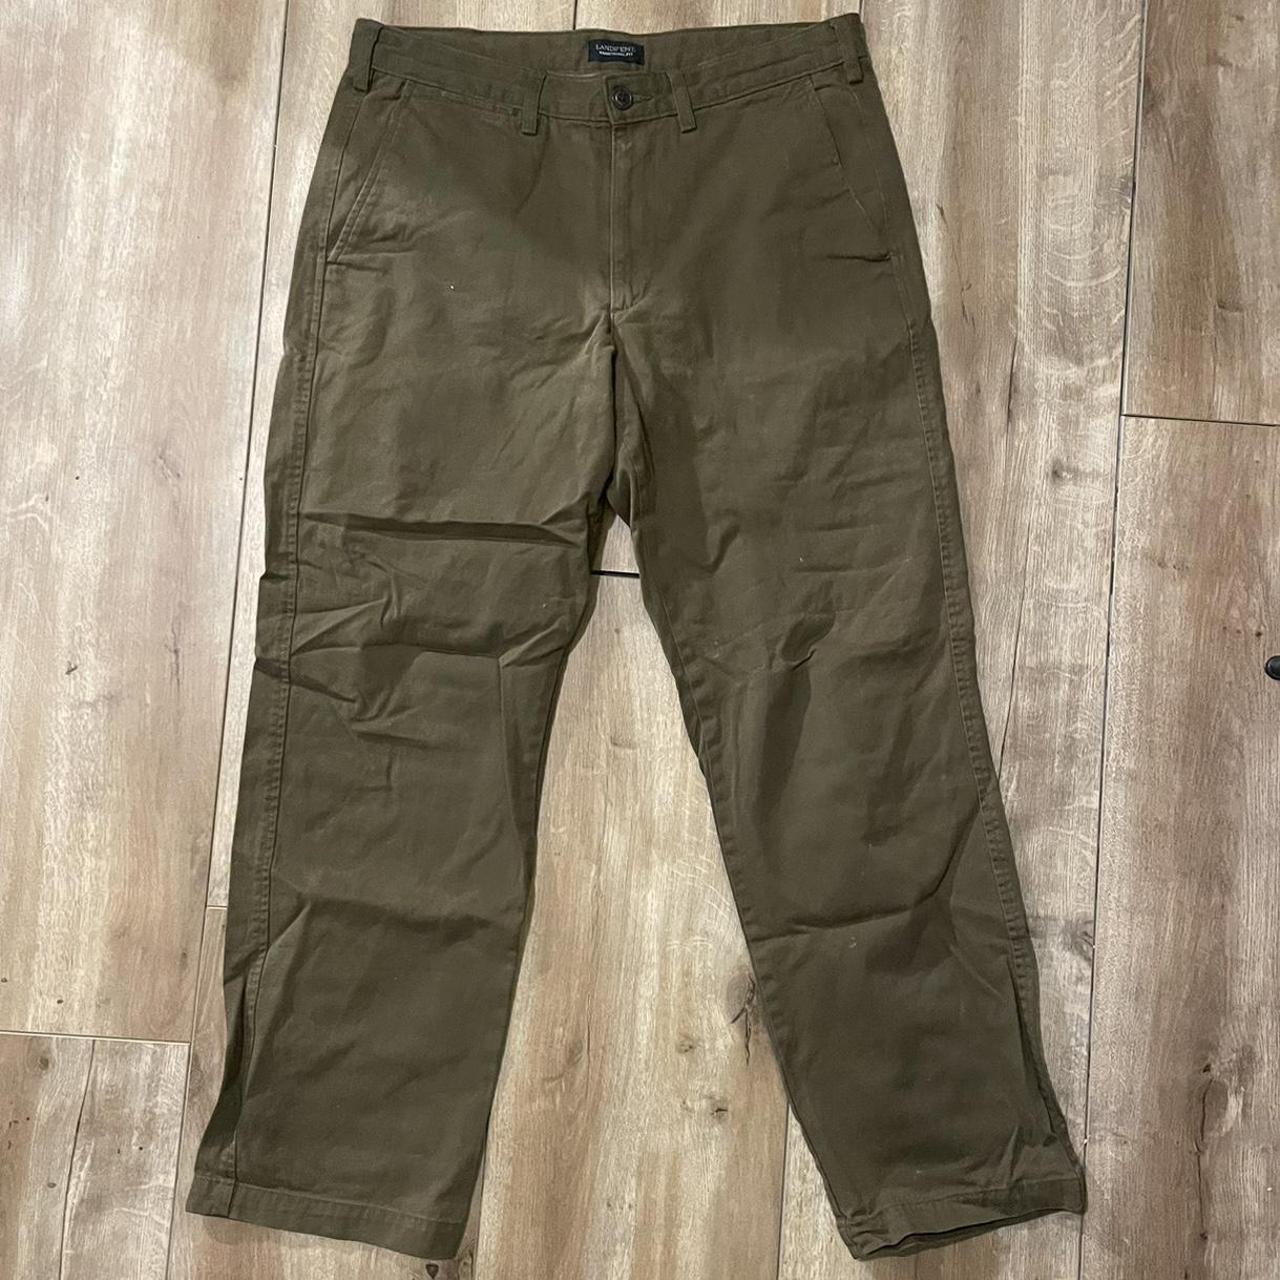 32 waist men’s vintage trousers pants (color is... - Depop